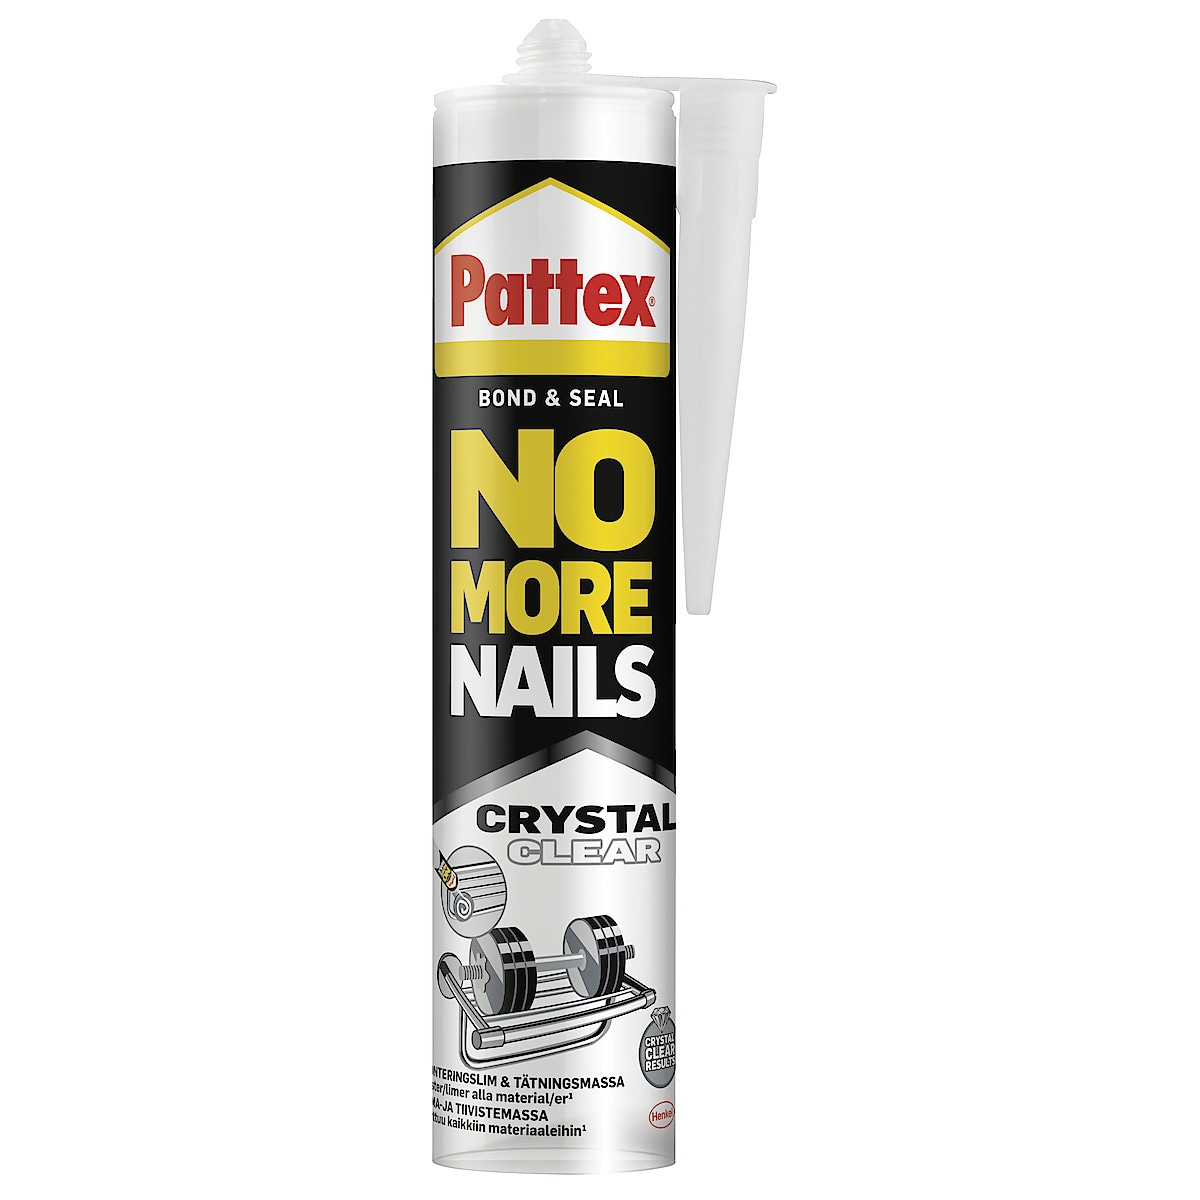 Pattex monteringslim og fugemasse Crystal Clear, 280 ml